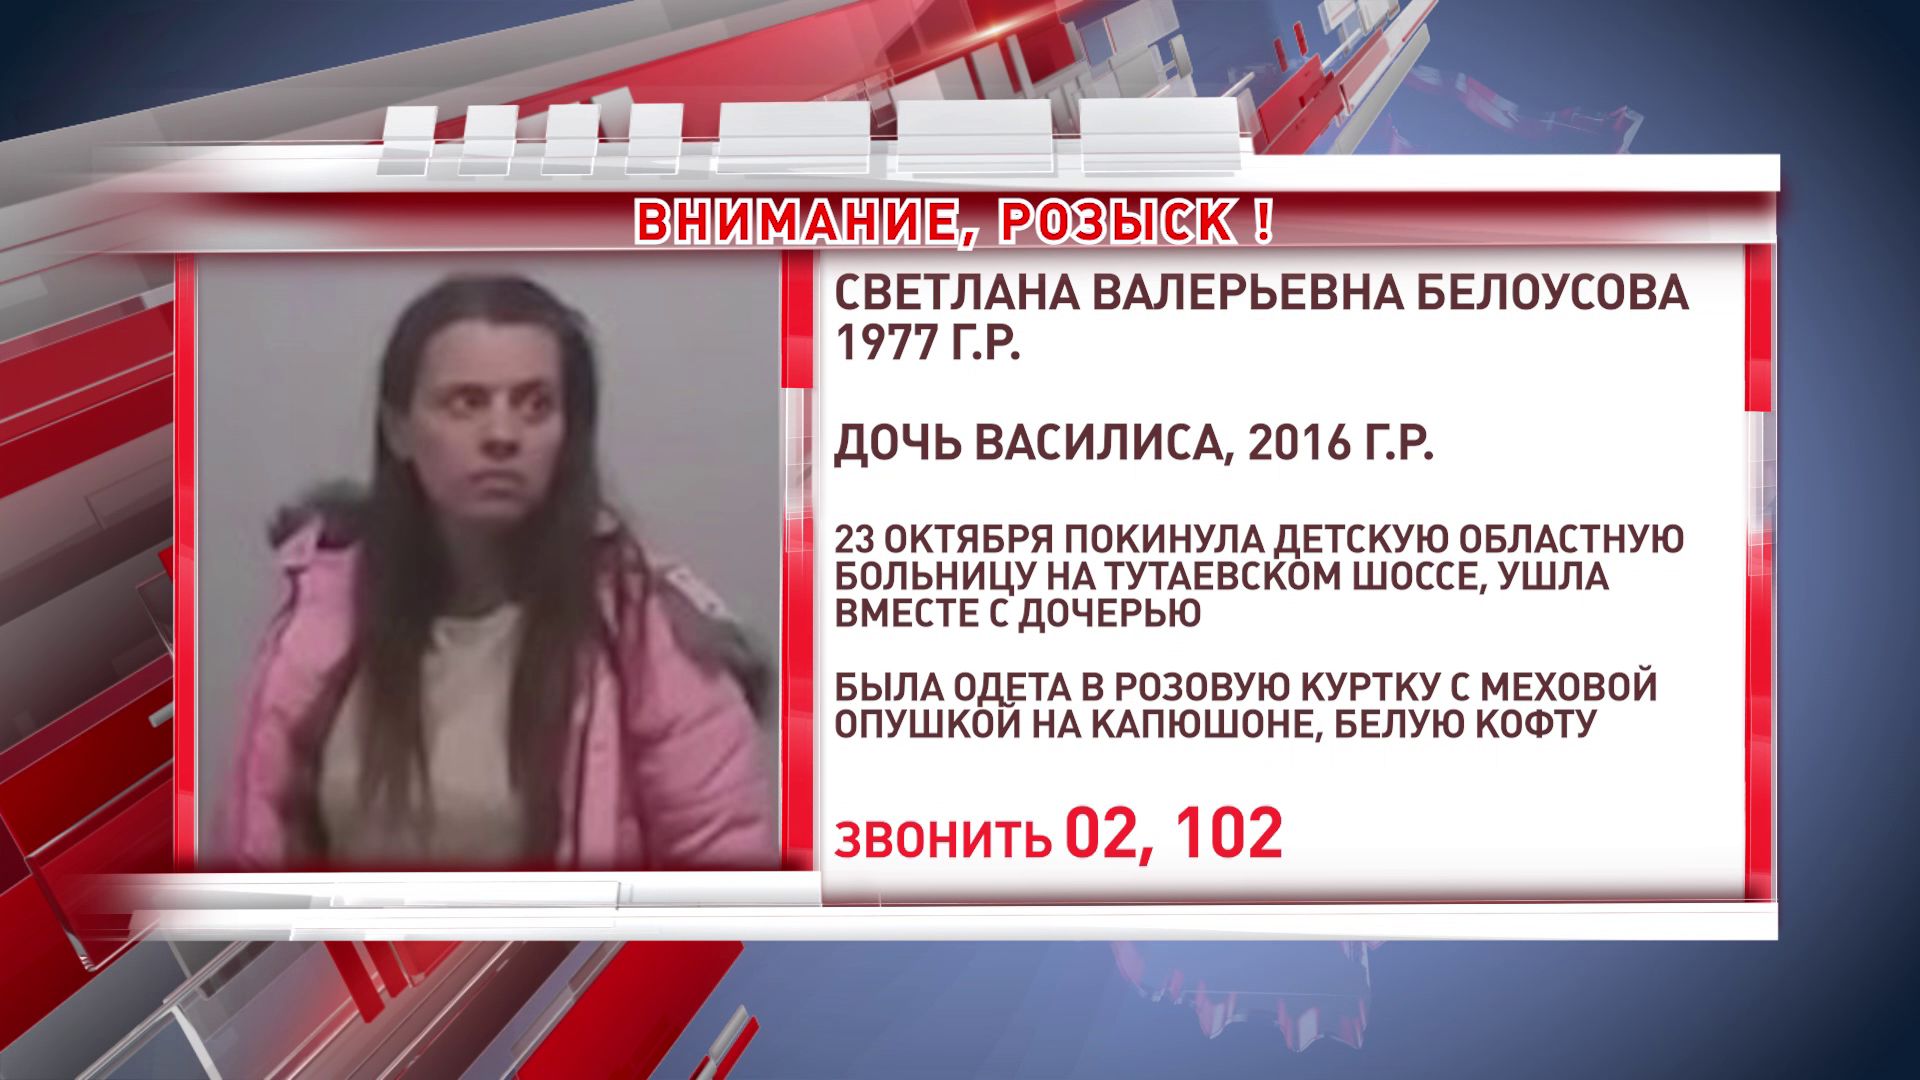 В Ярославле разыскивают женщину, которая жила с дочерью в подъезде